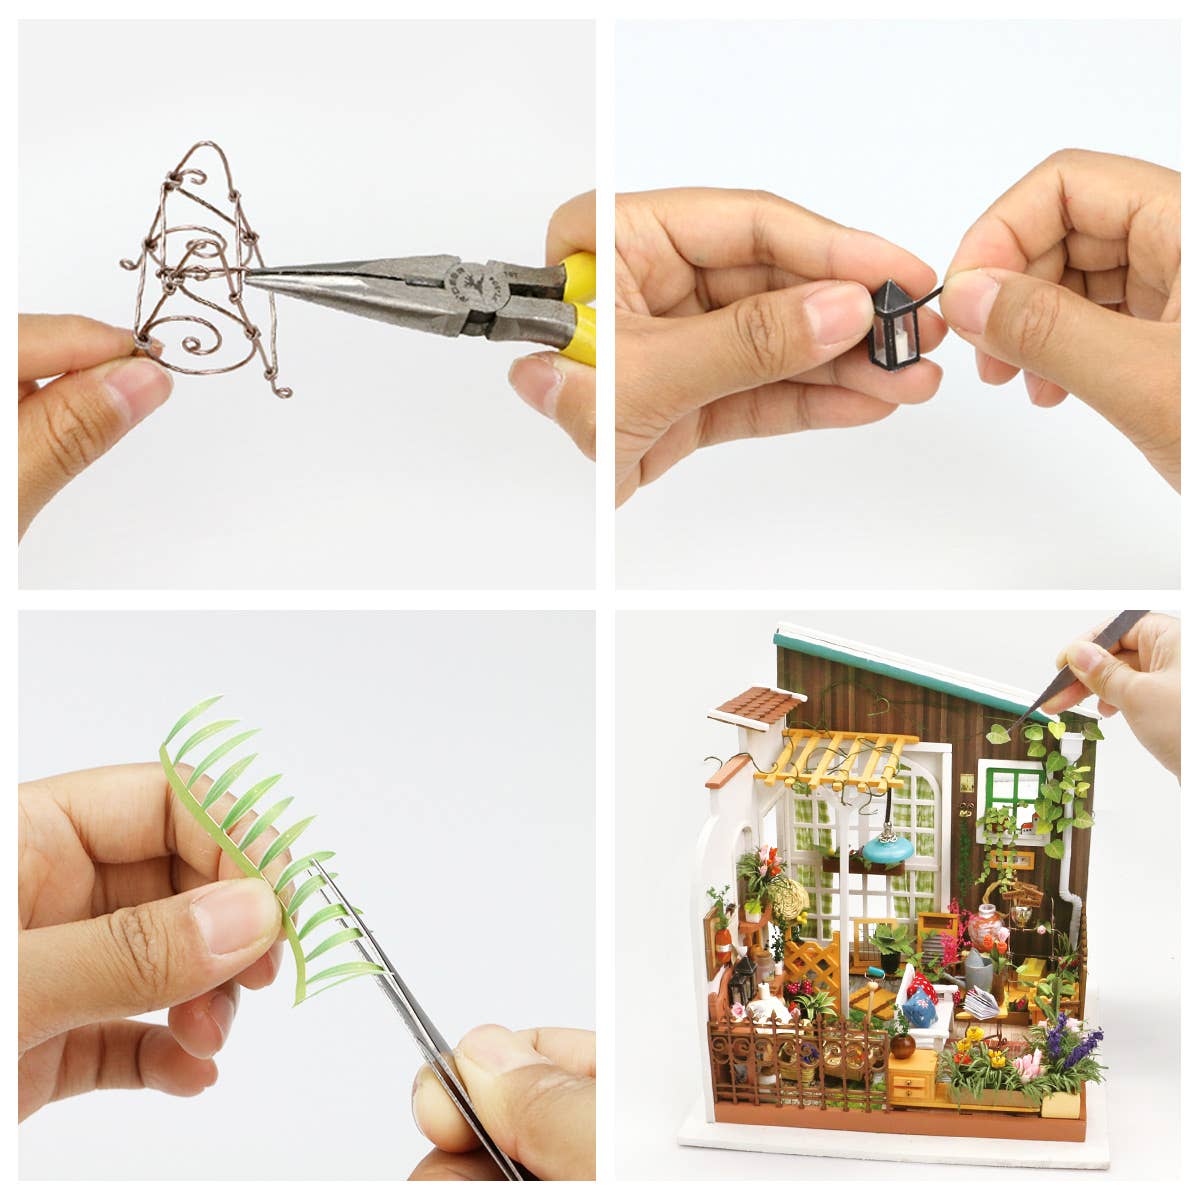 DIY Miniature Model Kit: Miller's Garden